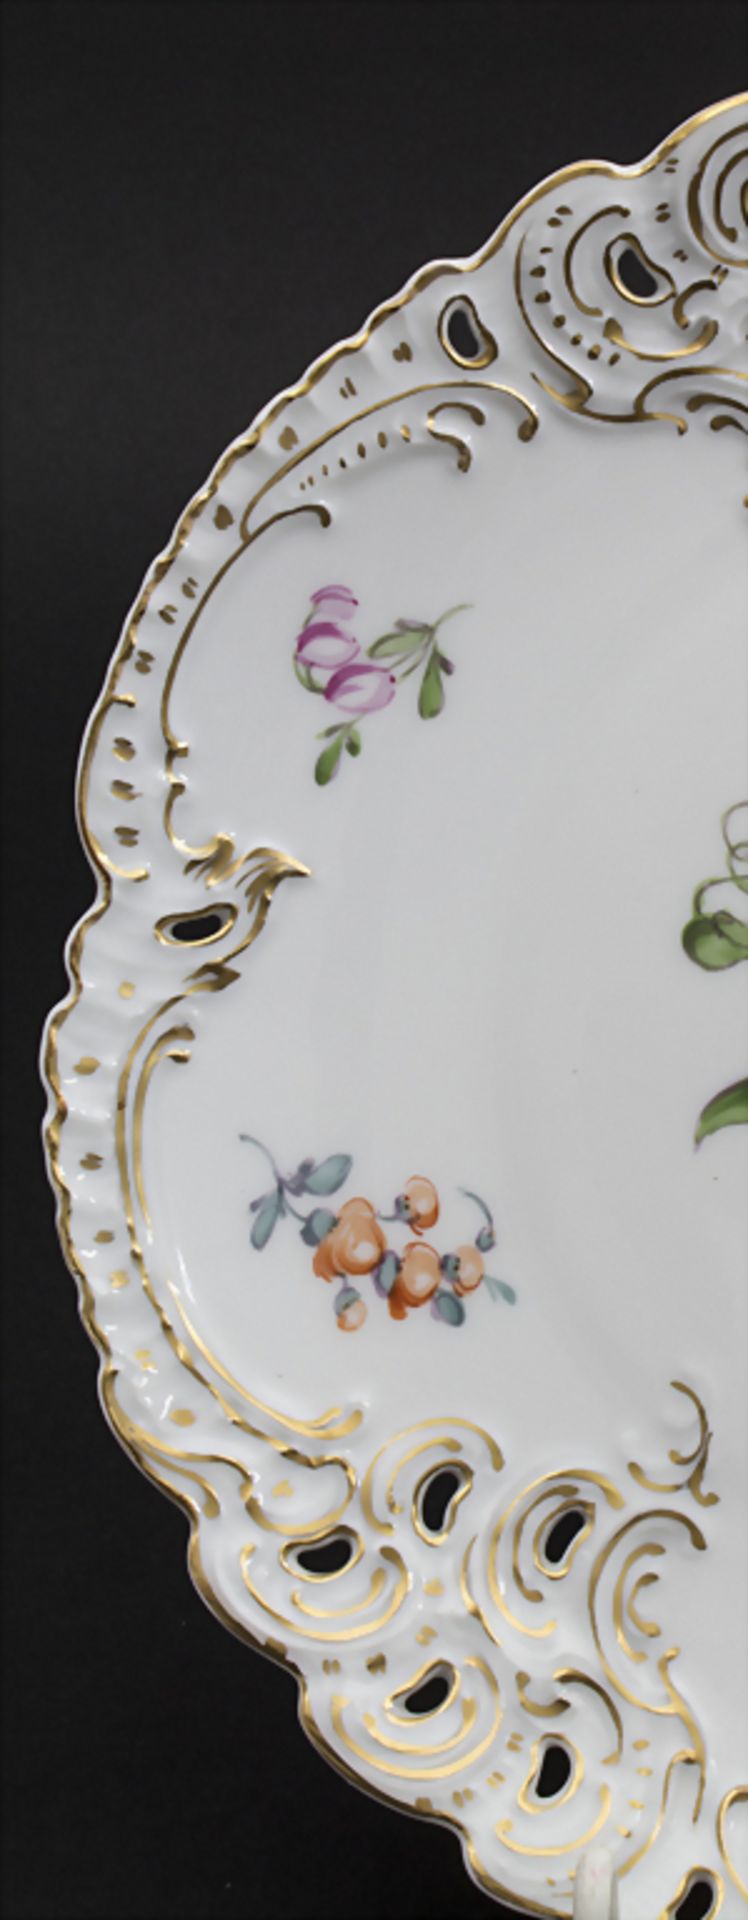 Zierteller / A decorative plate, Nymphenburg, um 1900 - Image 3 of 6